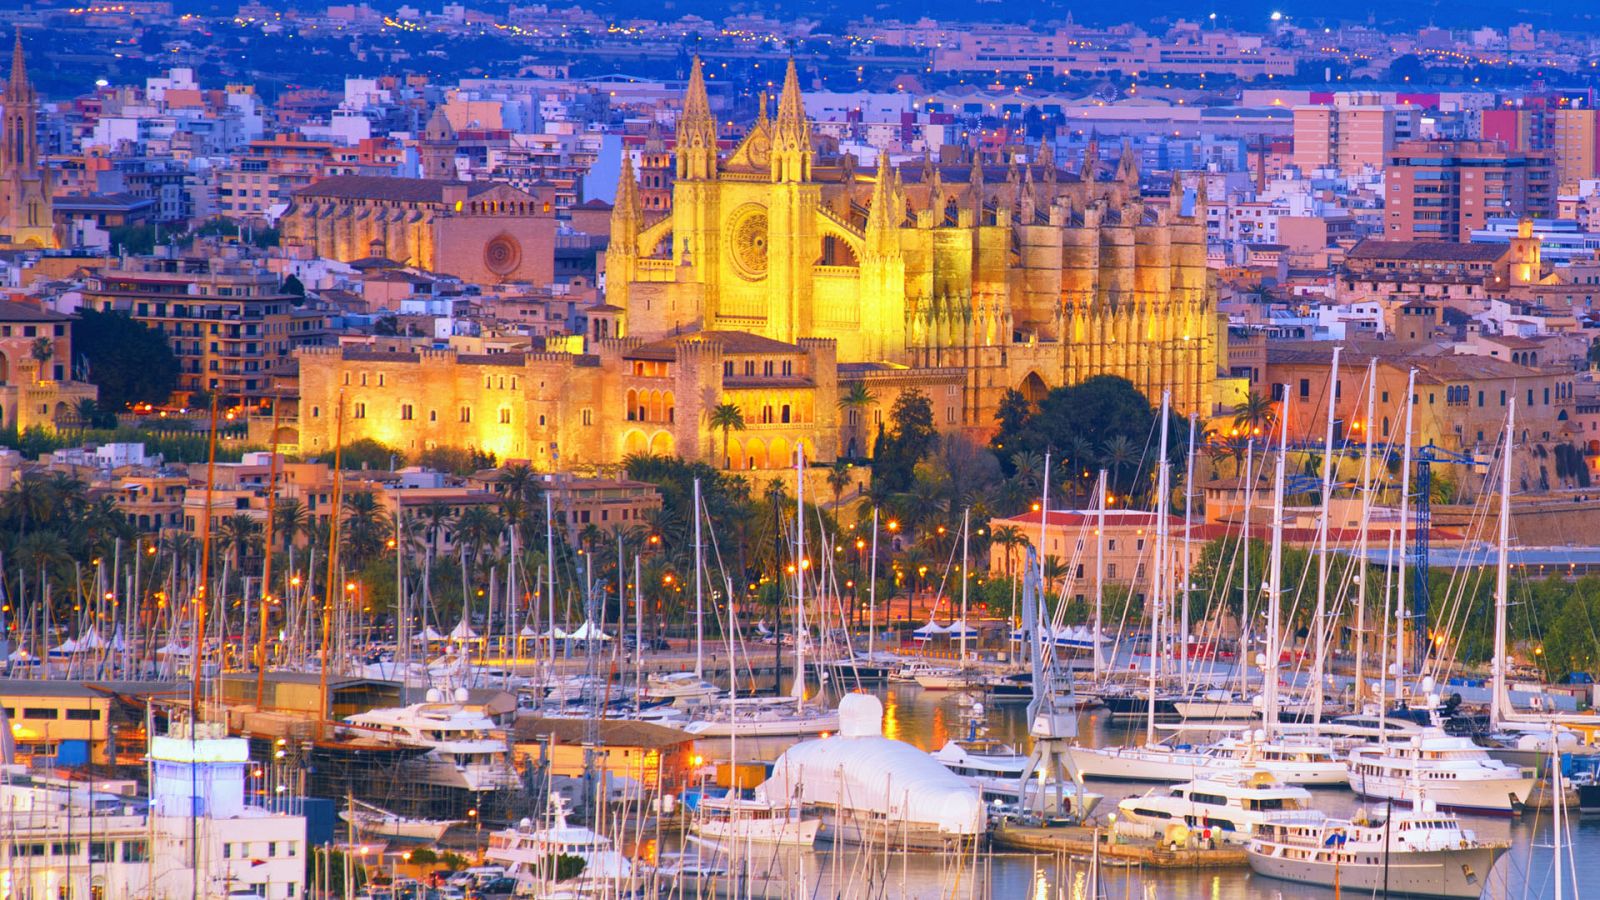 Ciudades para el Siglo XXI - Palma de Mallorca, ciudad en azul